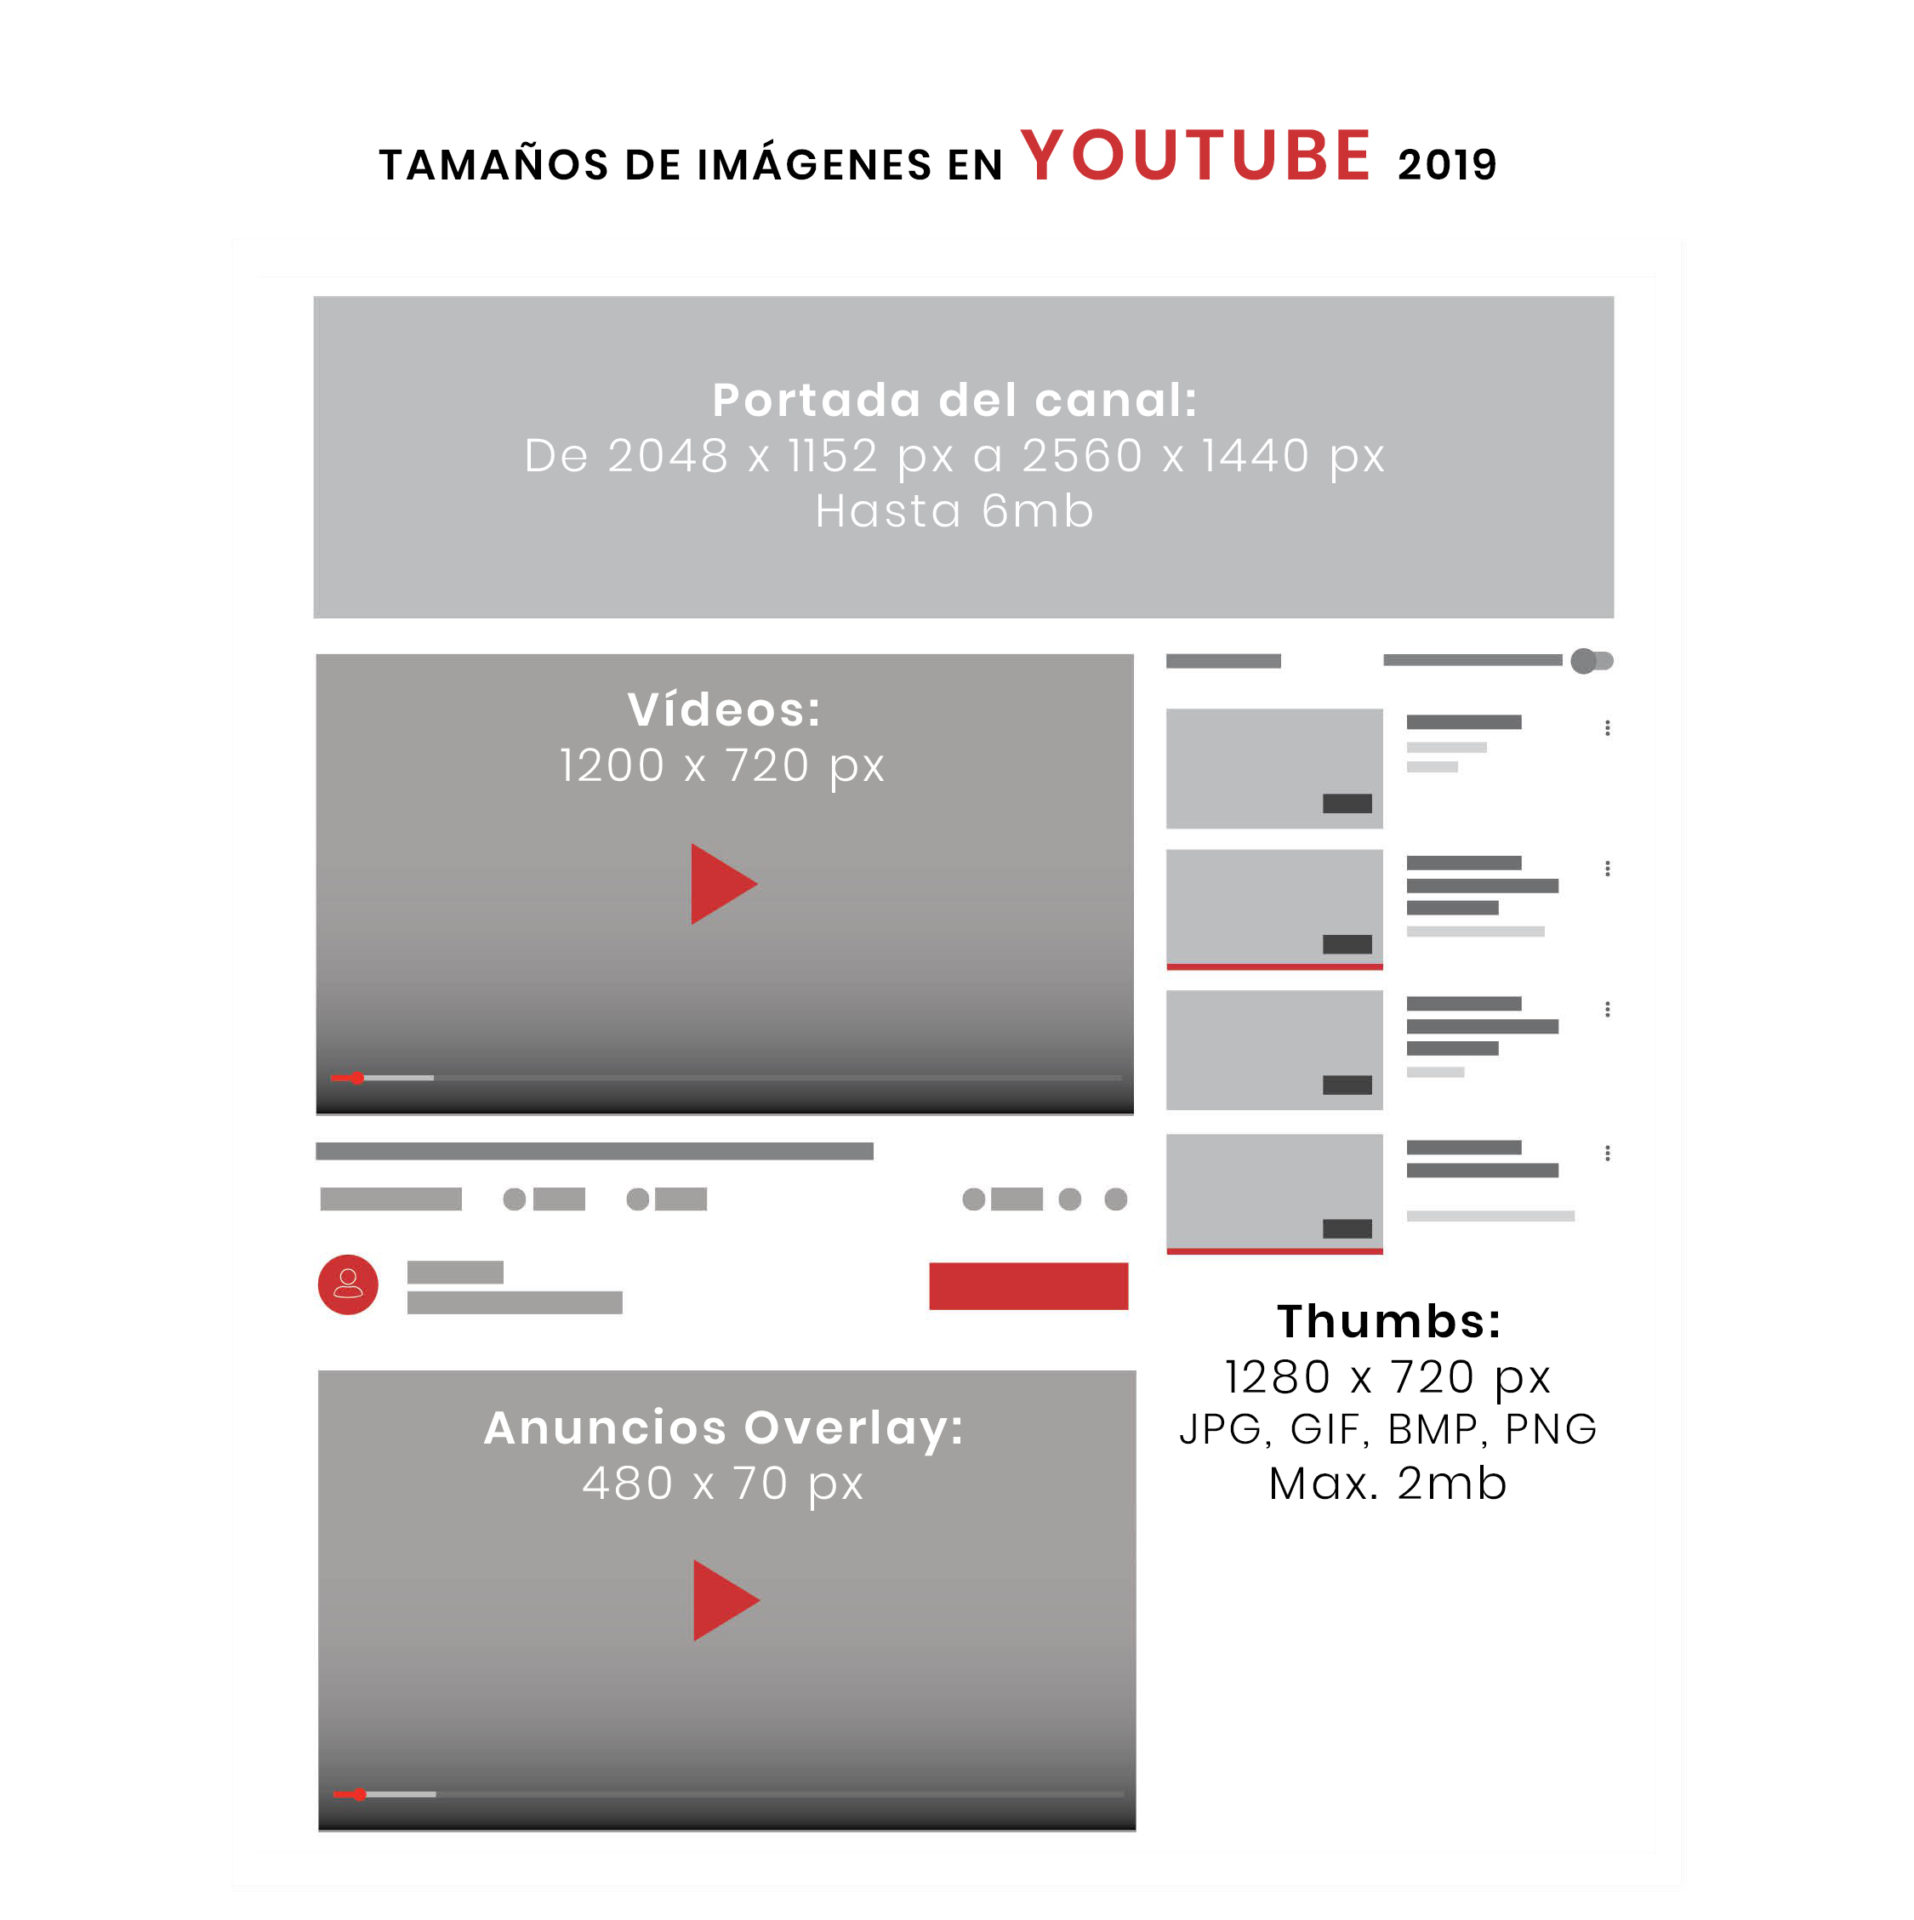 Tamaño en YouTube 2019